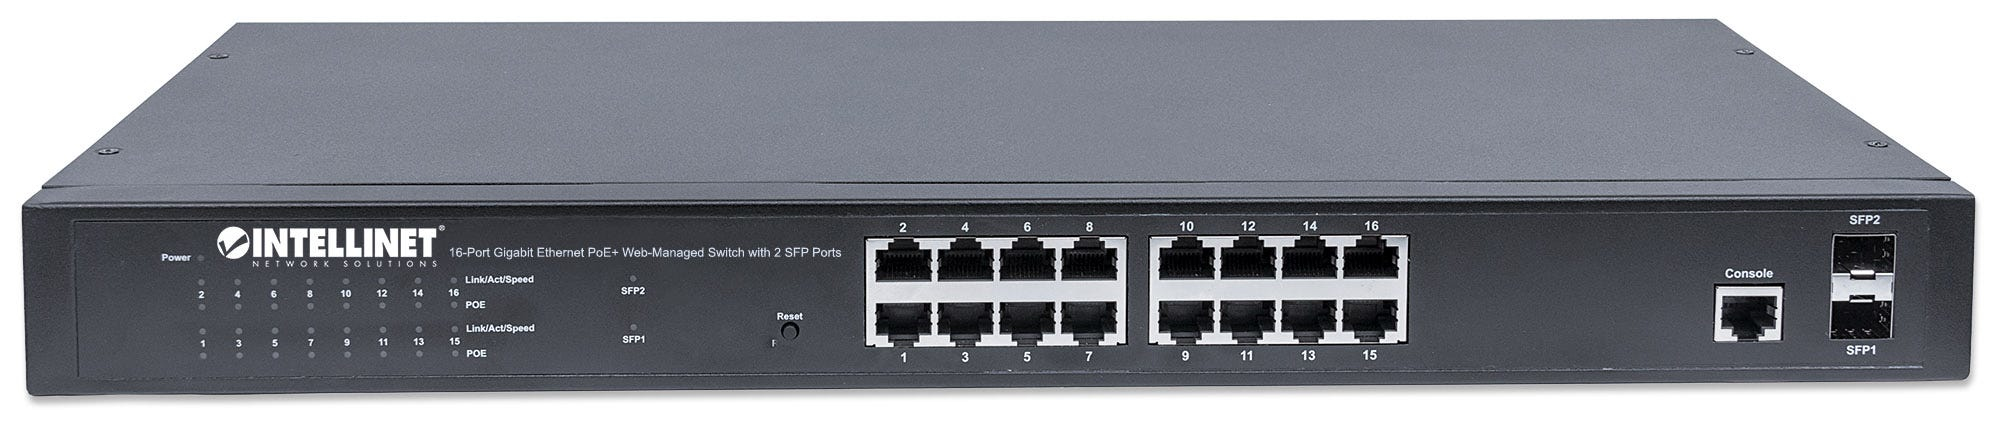 Intellinet 16-Port Gigabit Ethernet PoE+ Web-Managed Switch mit 2 SFP-Ports, IEEE 802.3at/af Power over Ethernet (PoE+/PoE)-